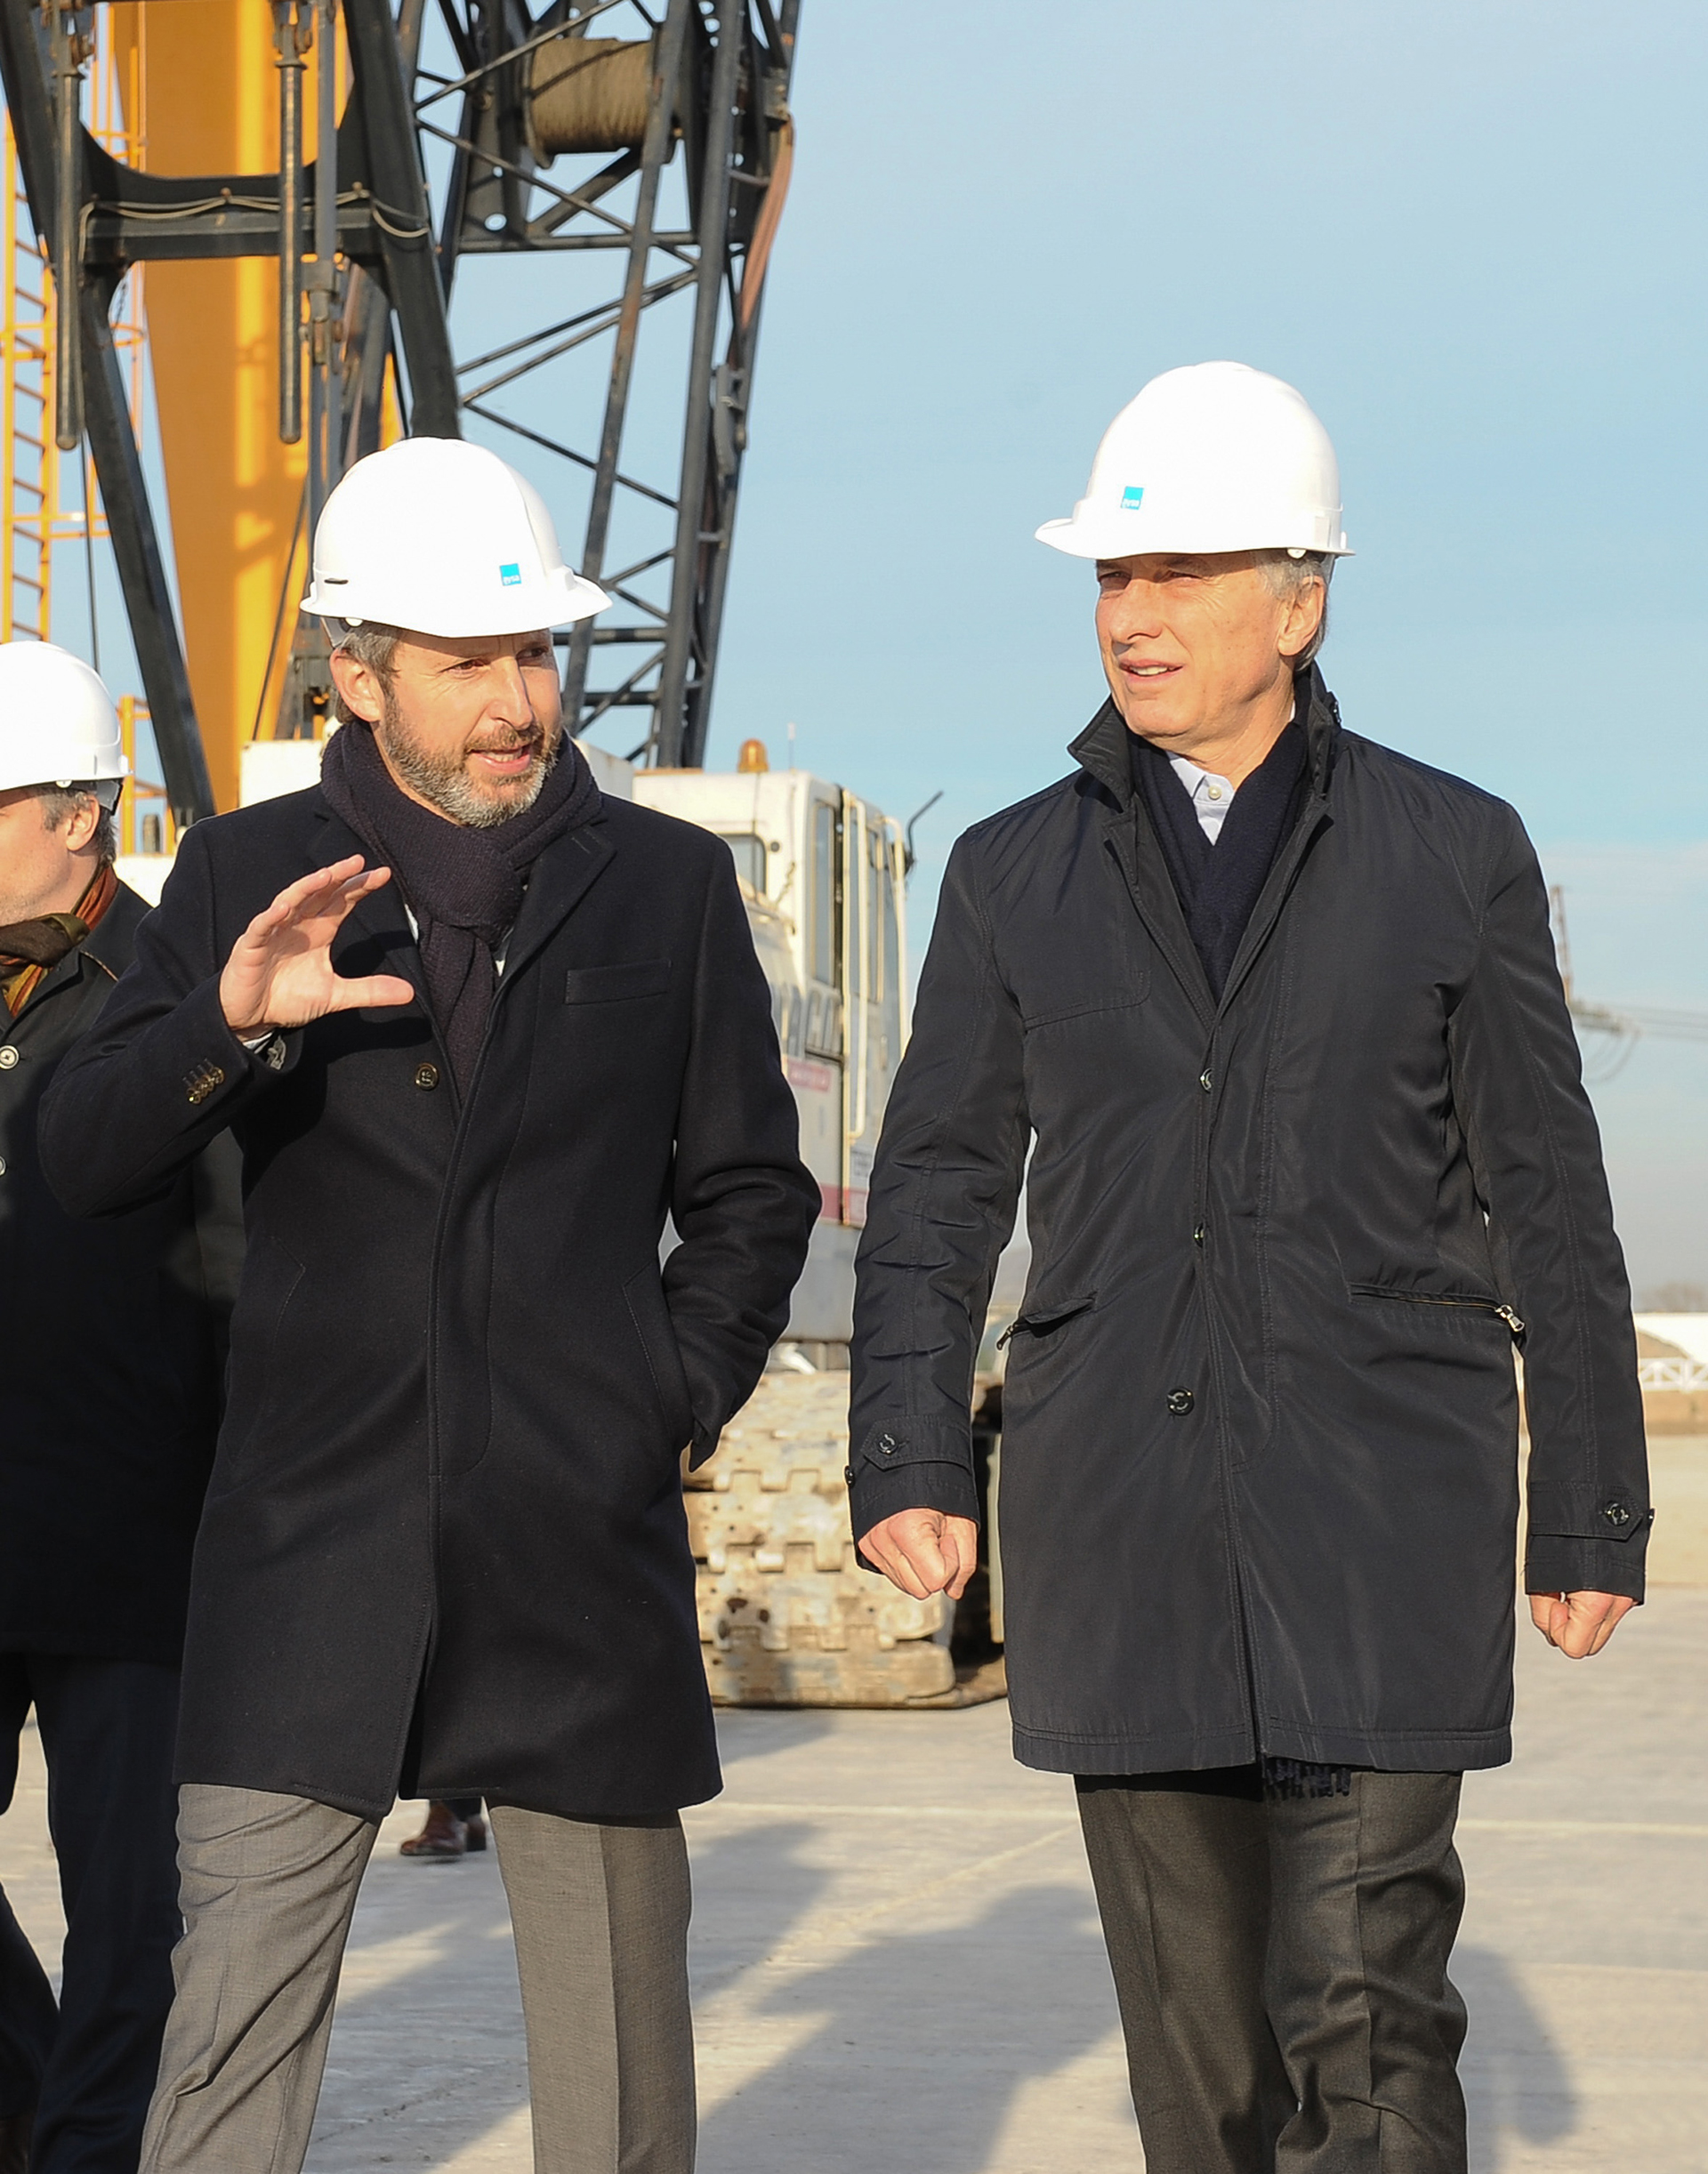 El Ministro Frigerio y el Presidente Macri con el casco puesto (Fotografía Ministerio del Interior,Obras Públicas y Vivienda.